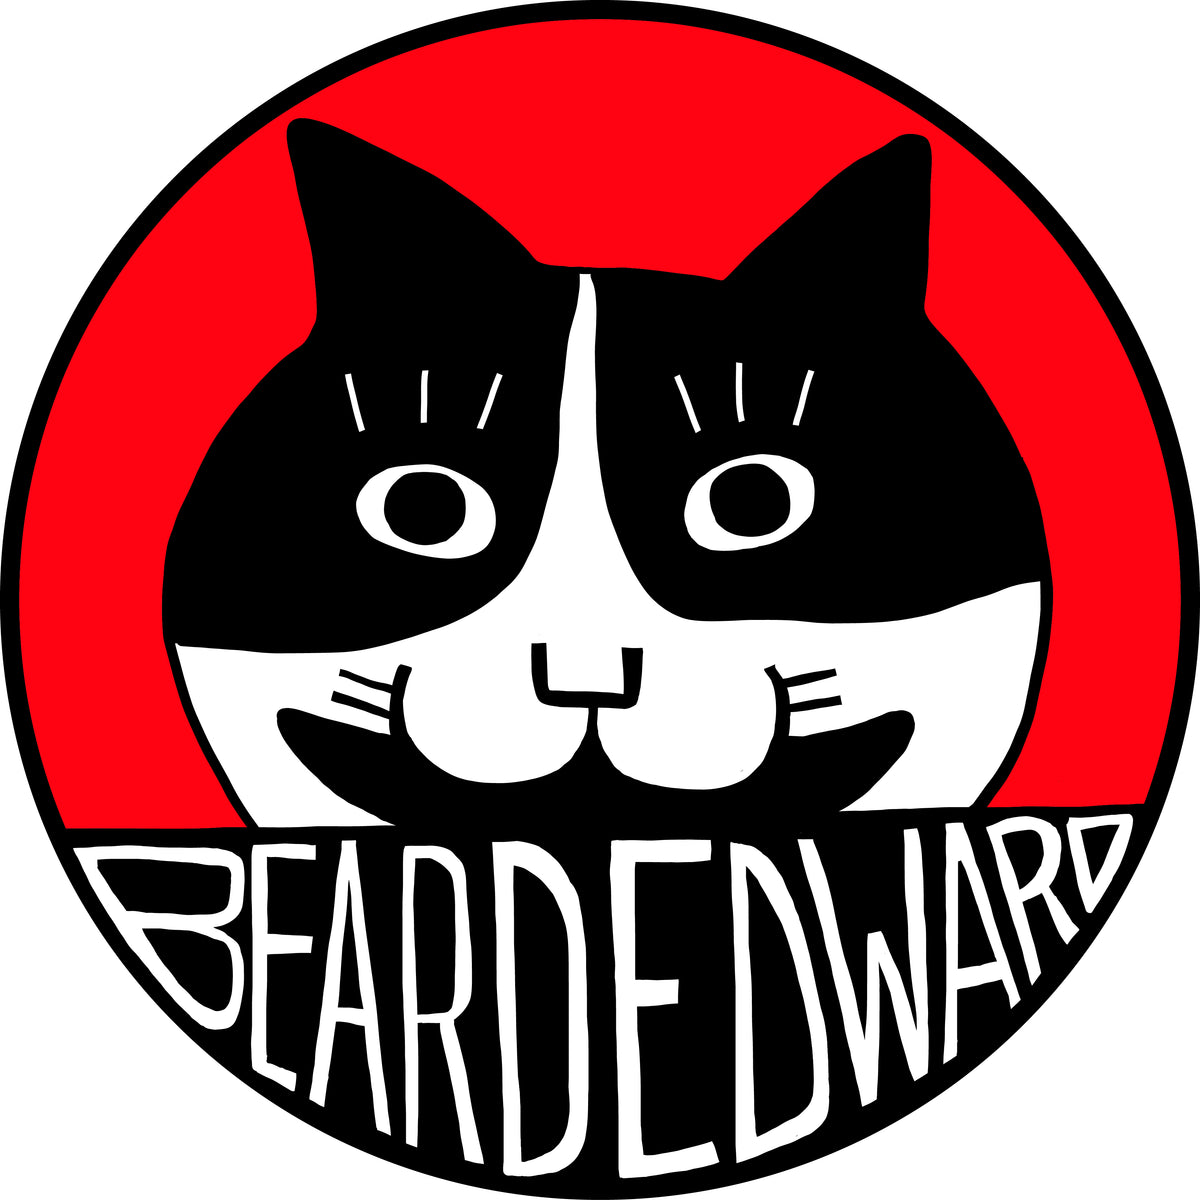 Beard Edward